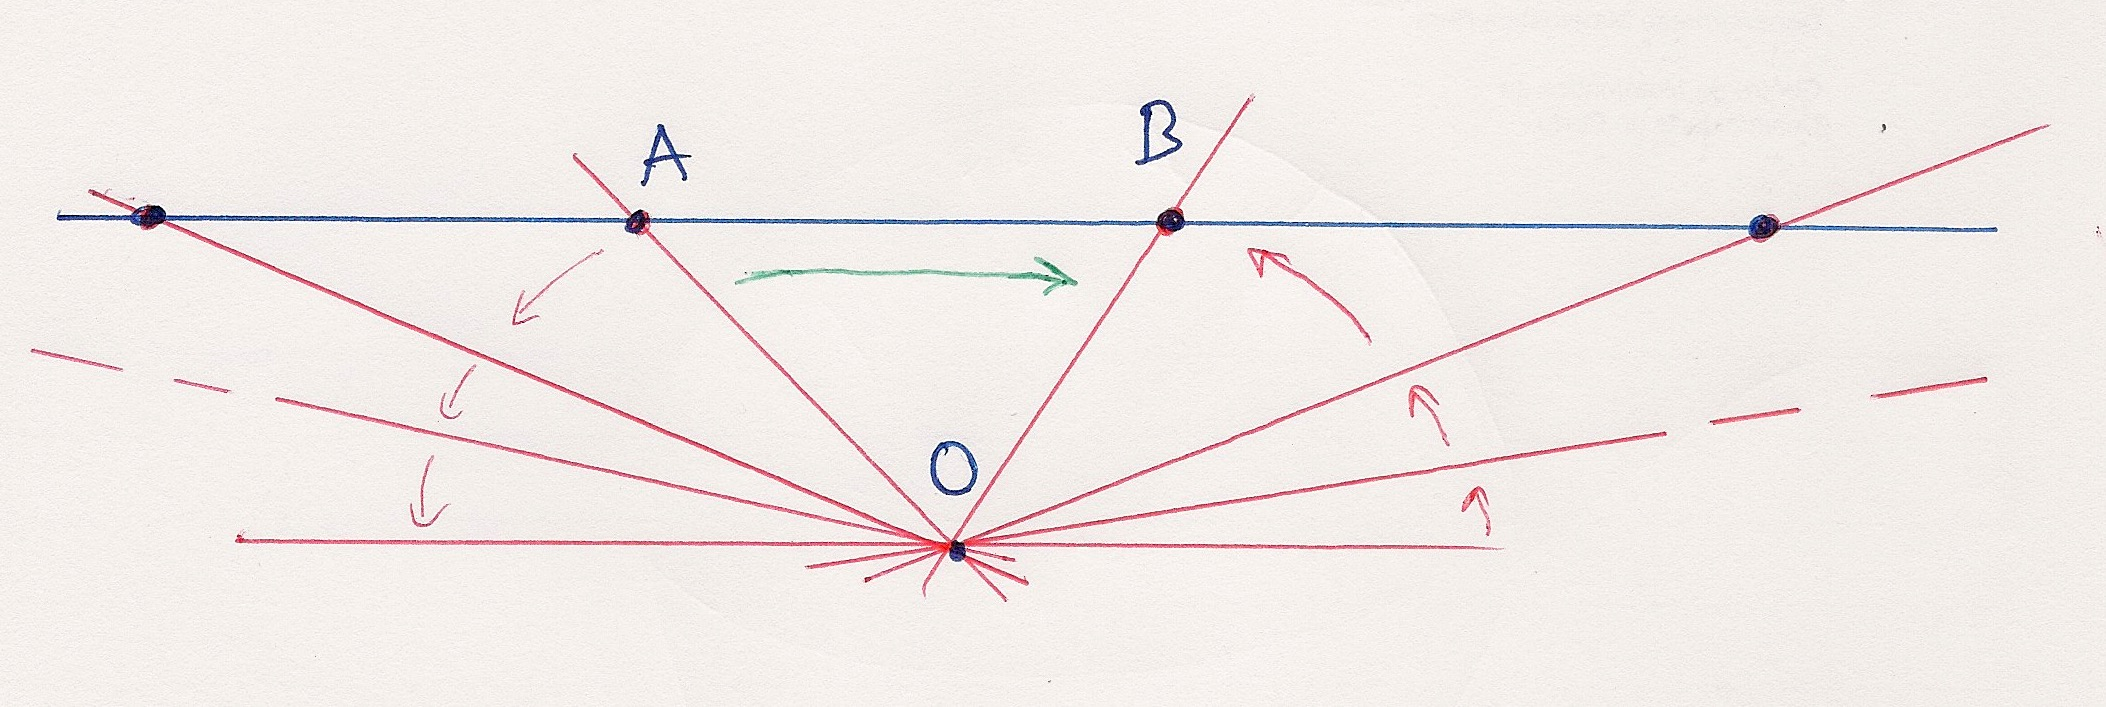 10 PETER GOTHEN Proposição 6.1. Sejam L e M retas distintas em P 2. Então L e M intersetam-se num único ponto. Deste teorema podemos deduzir o seguinte teorema da geometria euclidiana: Proposição 6.2. Sejam l e m duas retas distintas em E 2.